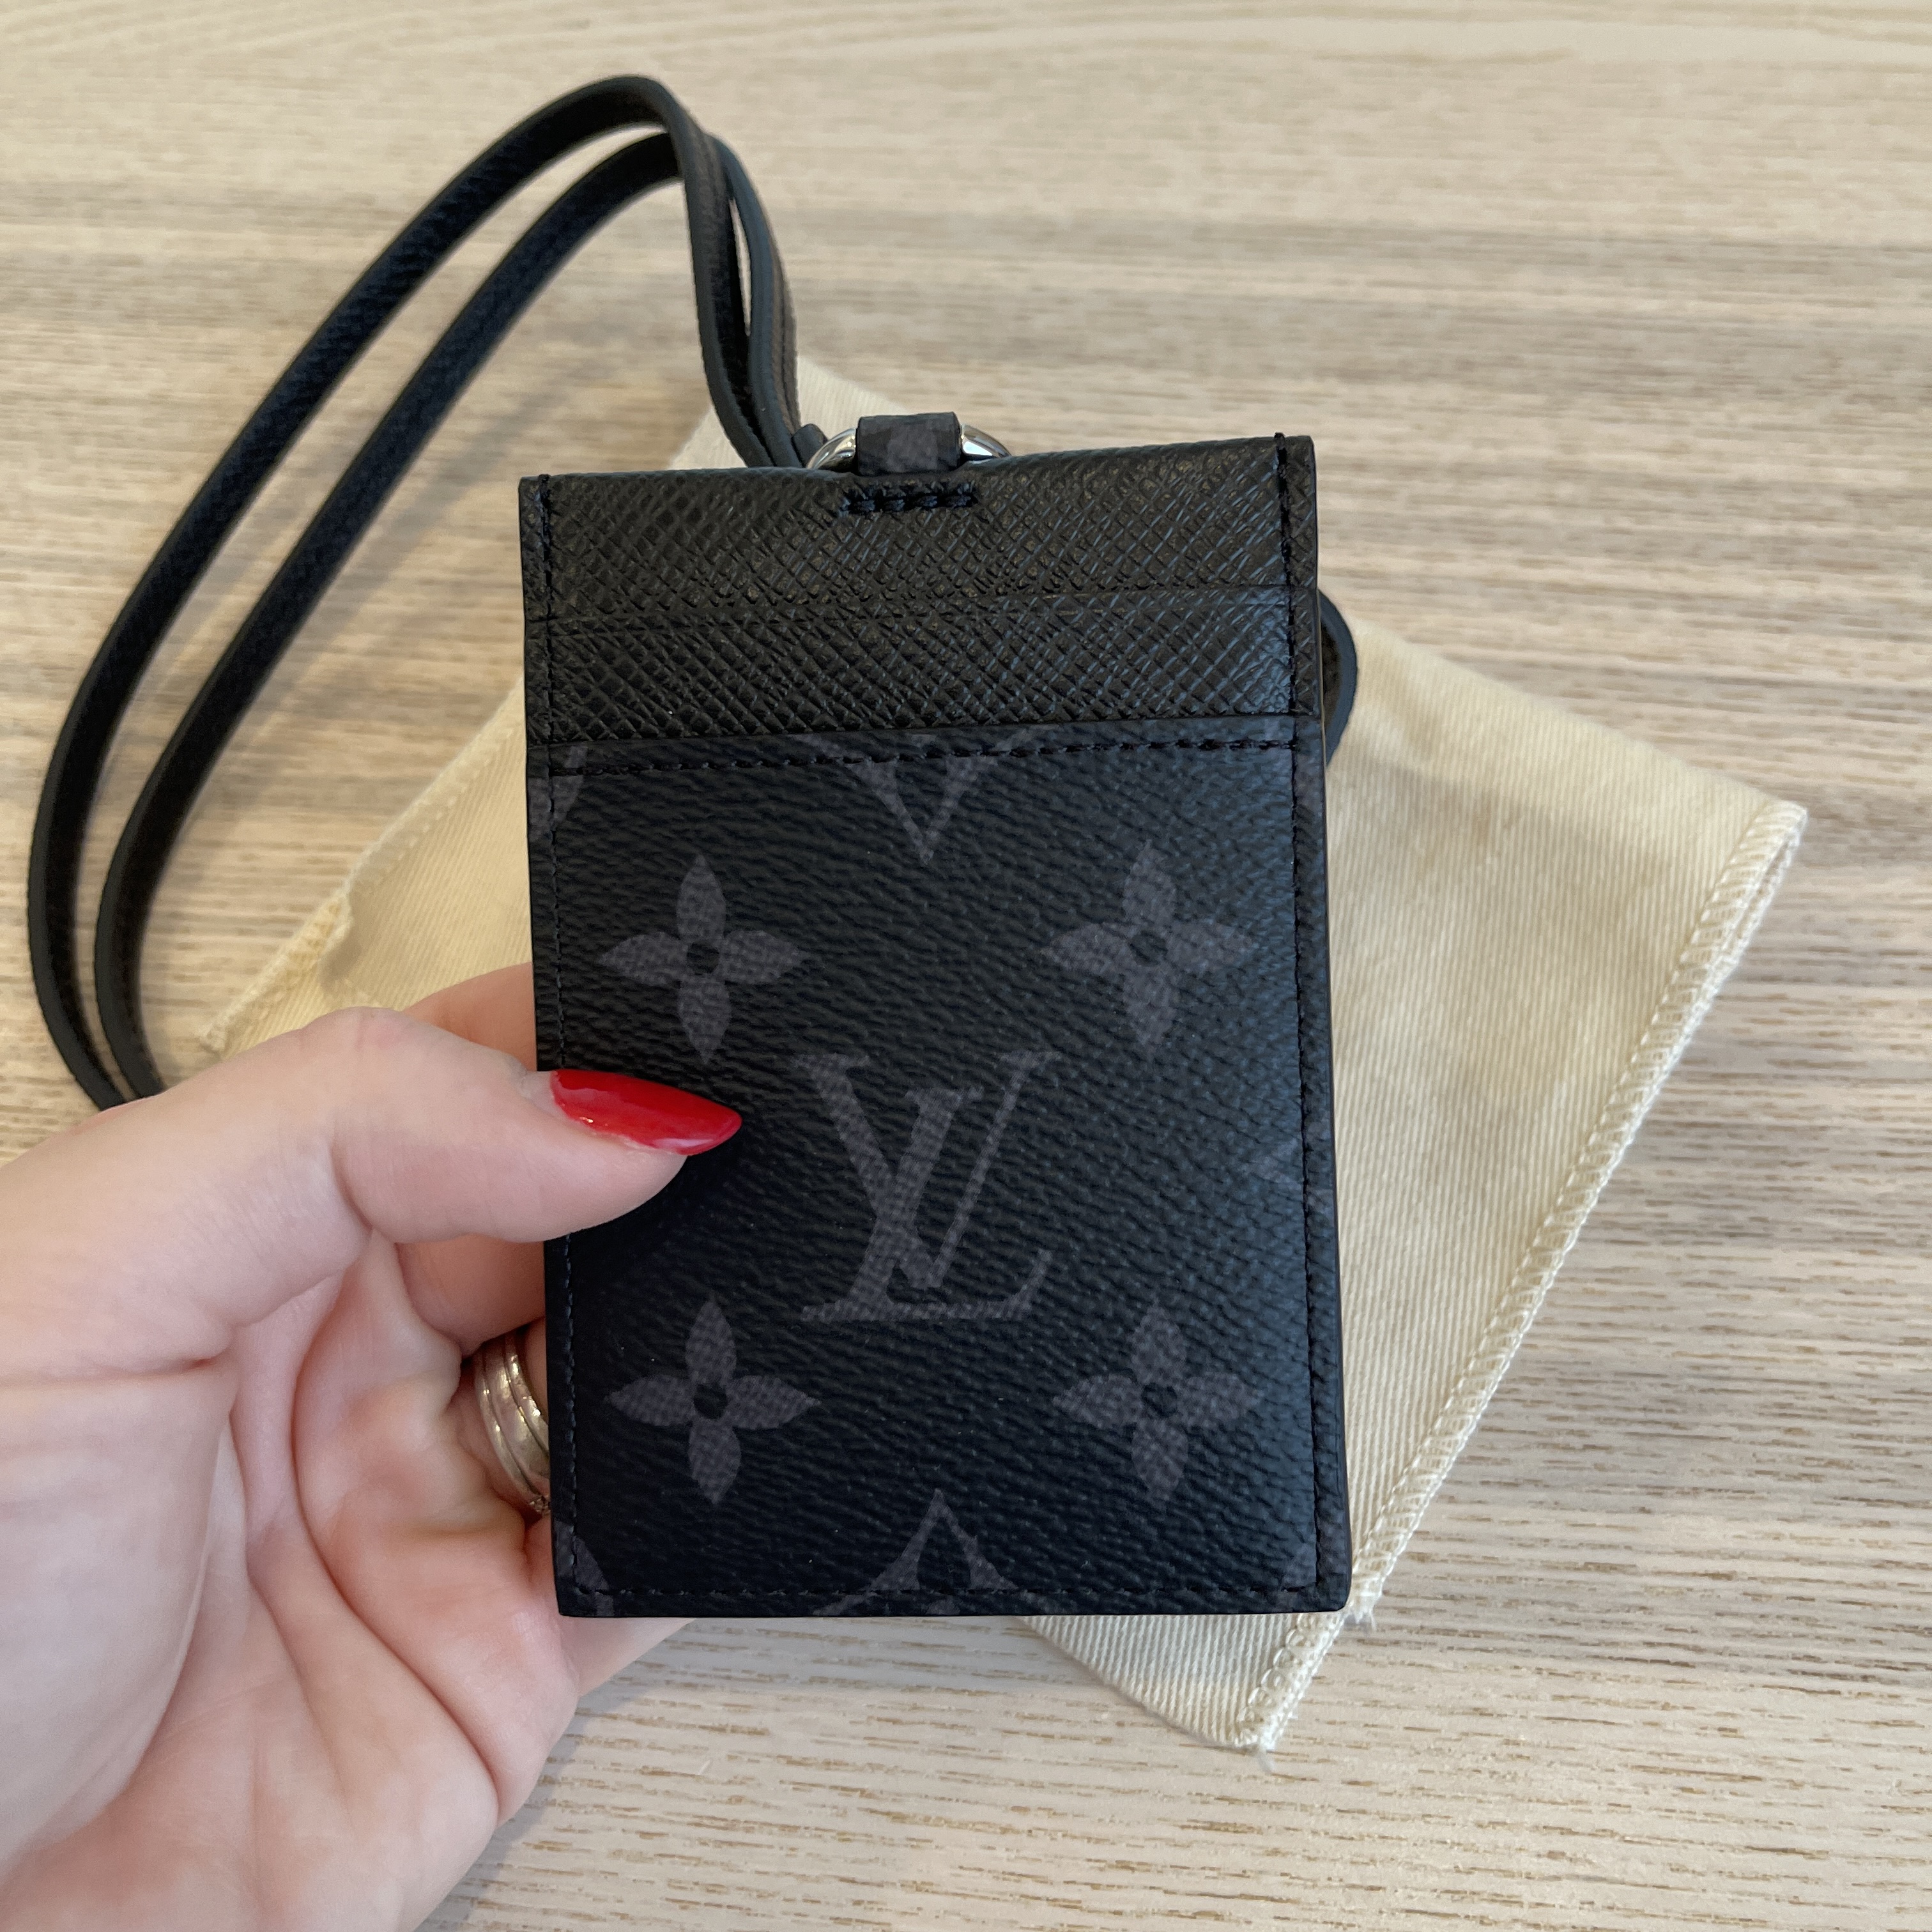 Louis Vuitton Monogram ID Card Holder, Designer Brand